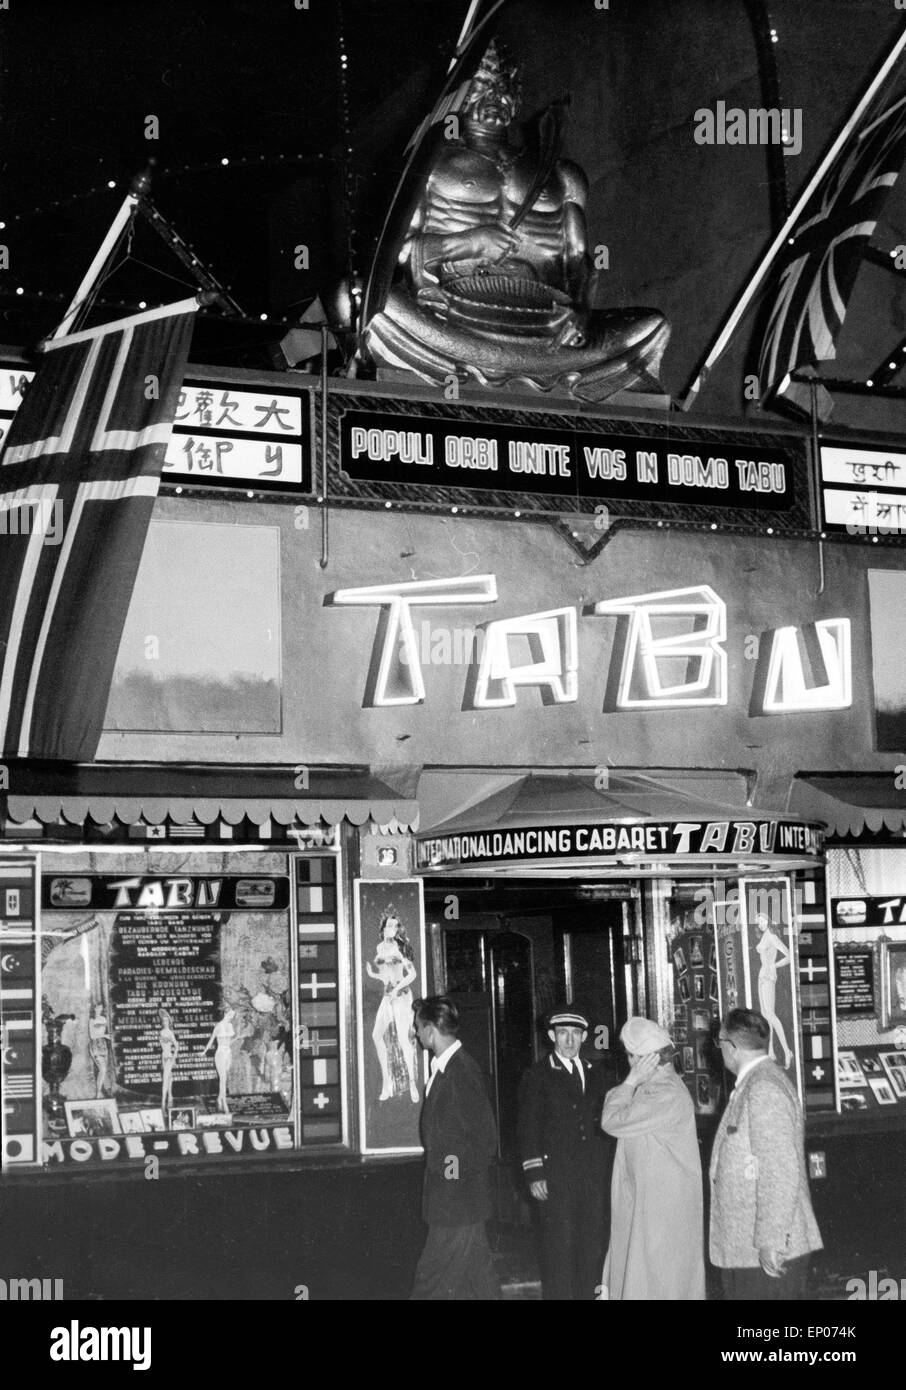 Der Nachtclub Tabu an der Großen Freiheit am Ende der Reeperbahn in Hamburg, 1950er Jahre. The Tabu nightclub at the Große Freih Stock Photo